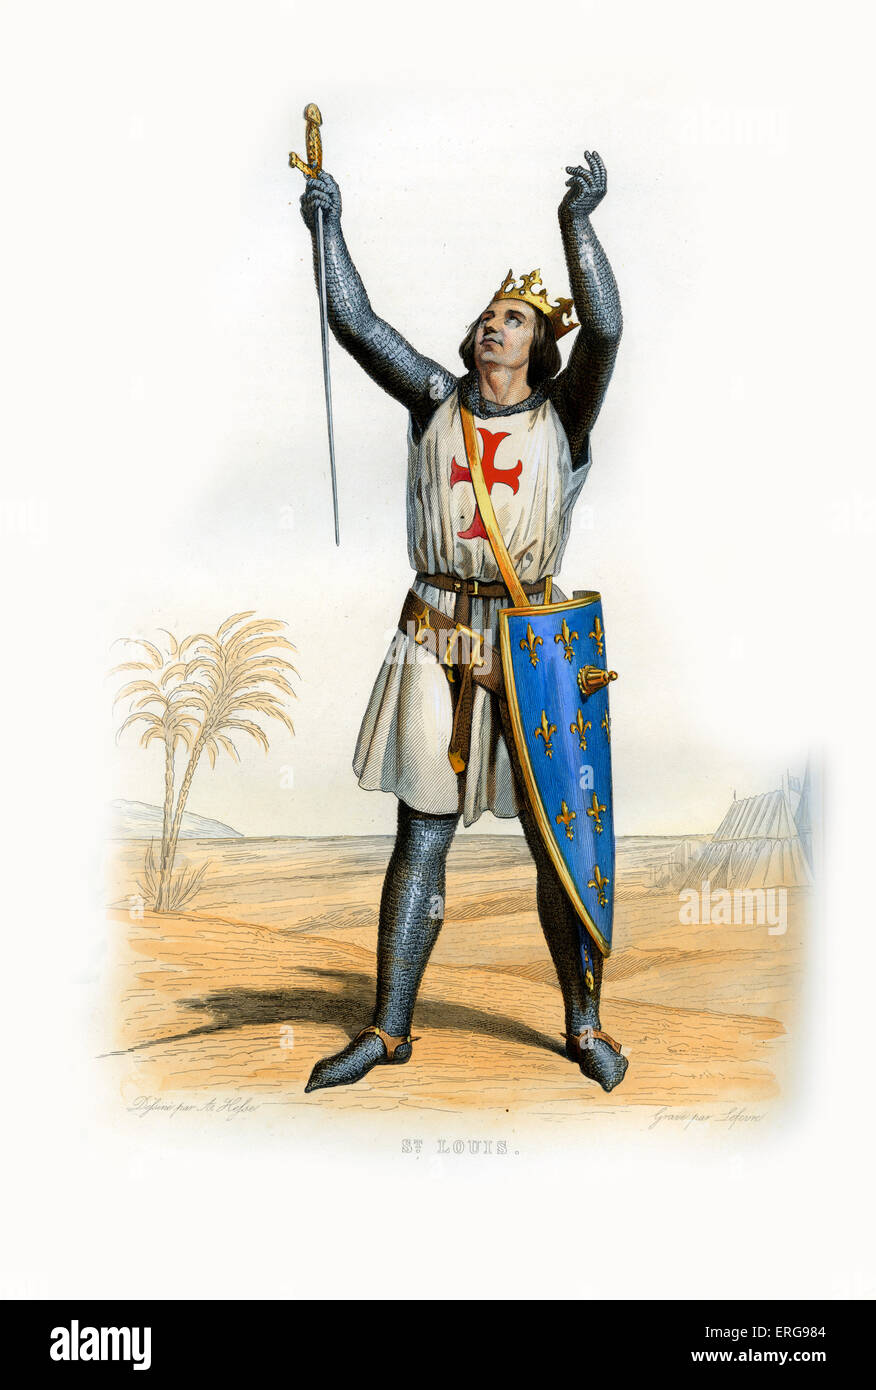 Louis IX von Frankreich, bekannt als Saint-Louis. König von Frankreich (1226-1270). 1215-1270. Kupferstich von Lefevre, c.1844. Stockfoto